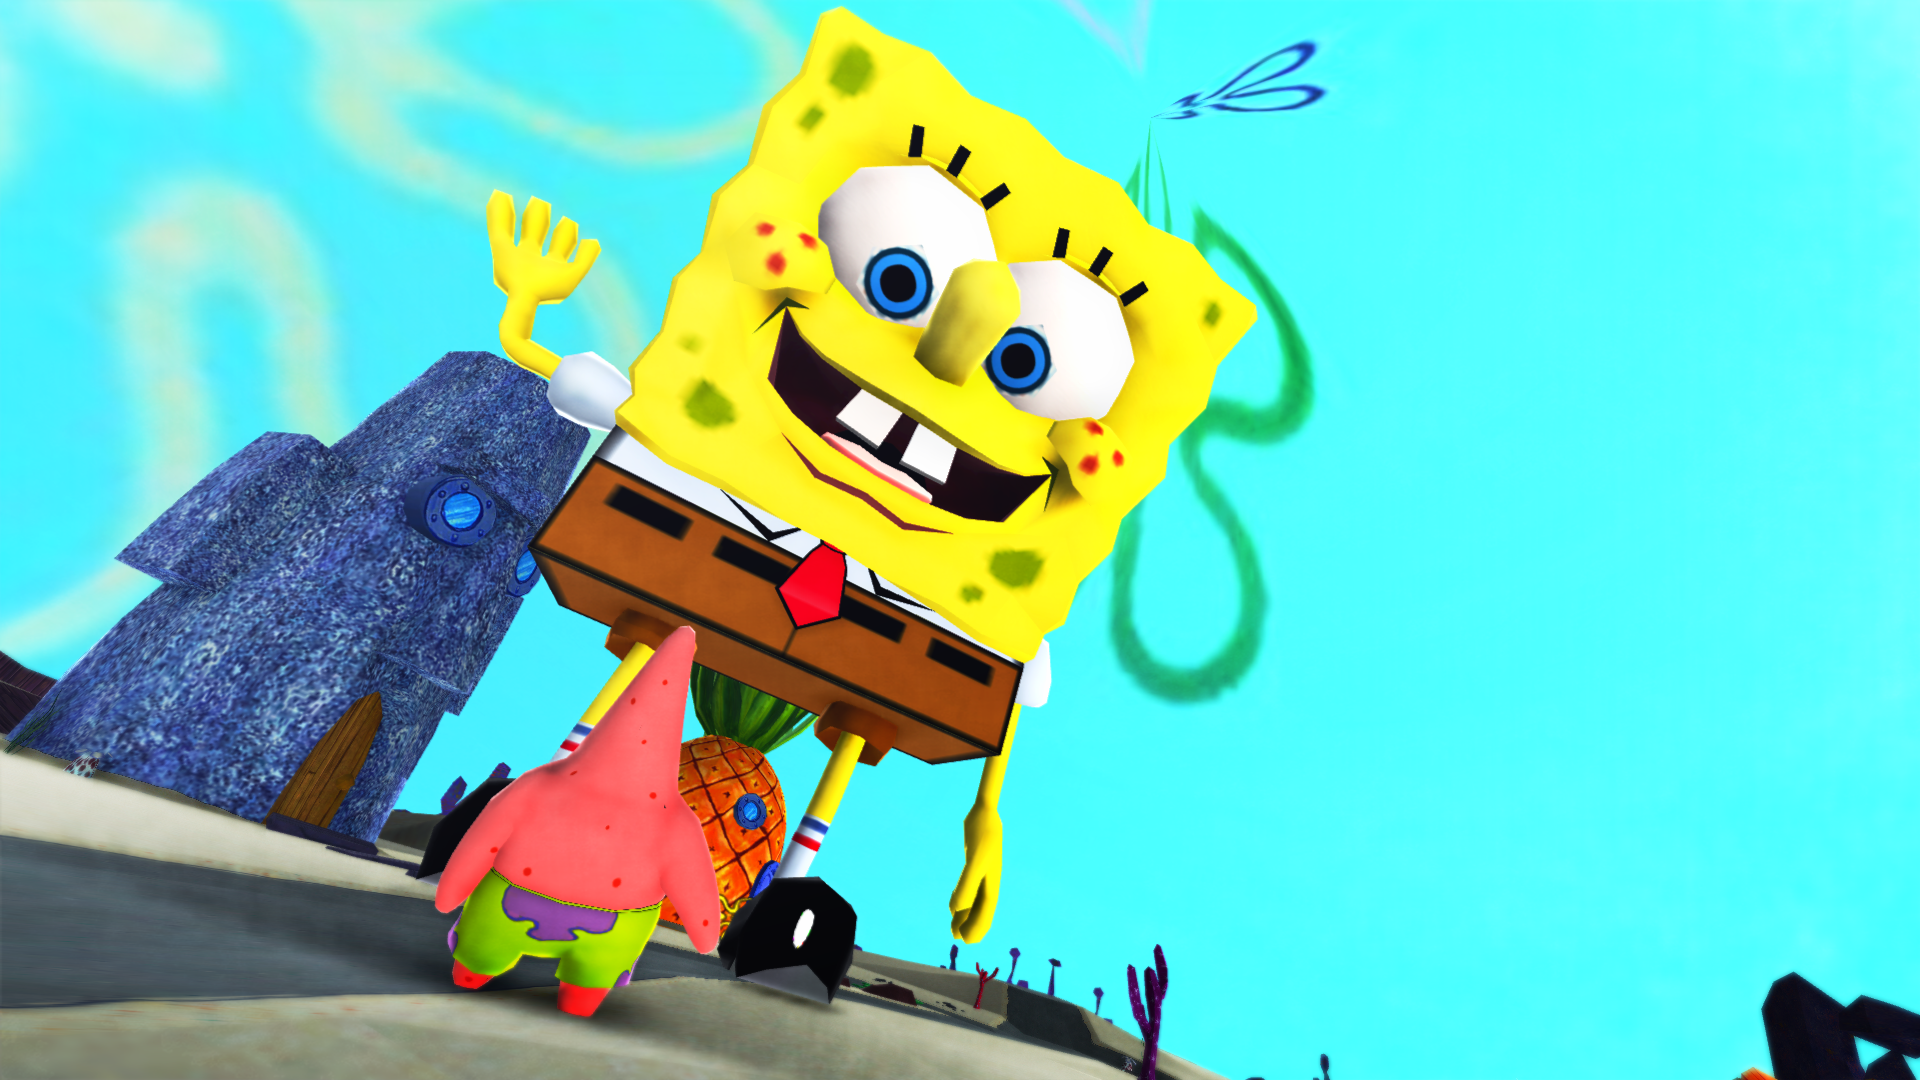 Spongebob unboxing giftwhat. Spongebob MMD. Spongebob MMD model. Giant Spongebob. Патрик какает.